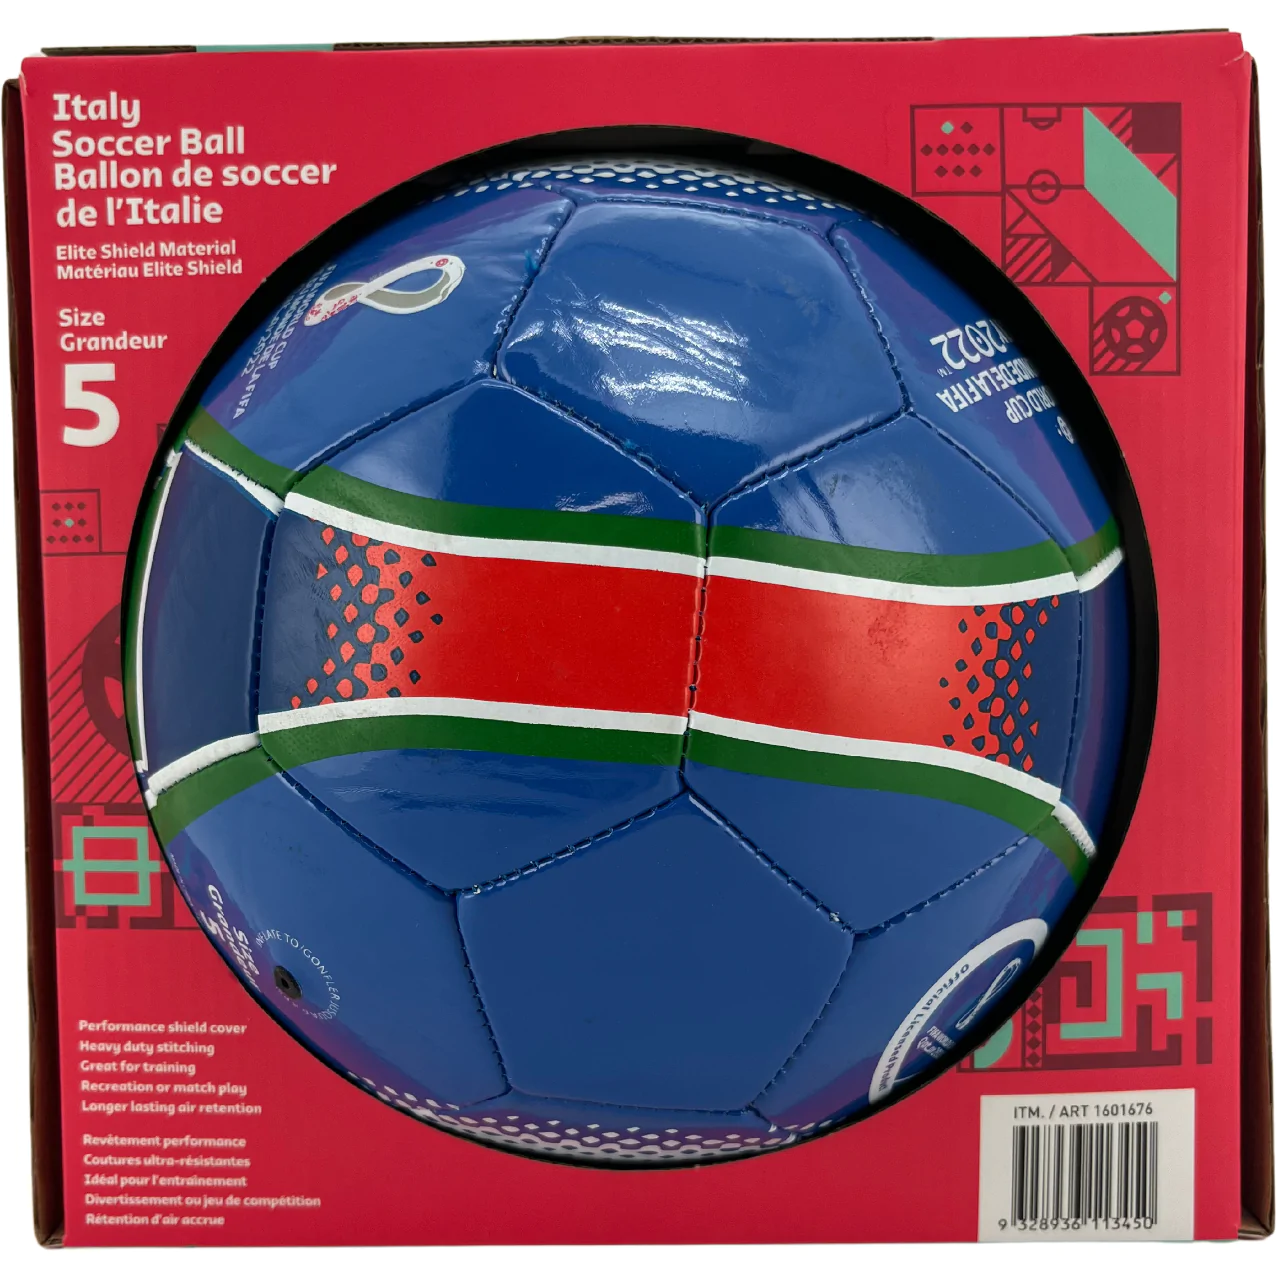 Children's Soccer Ball / Italy Soccer Ball / Size 5 / Blue